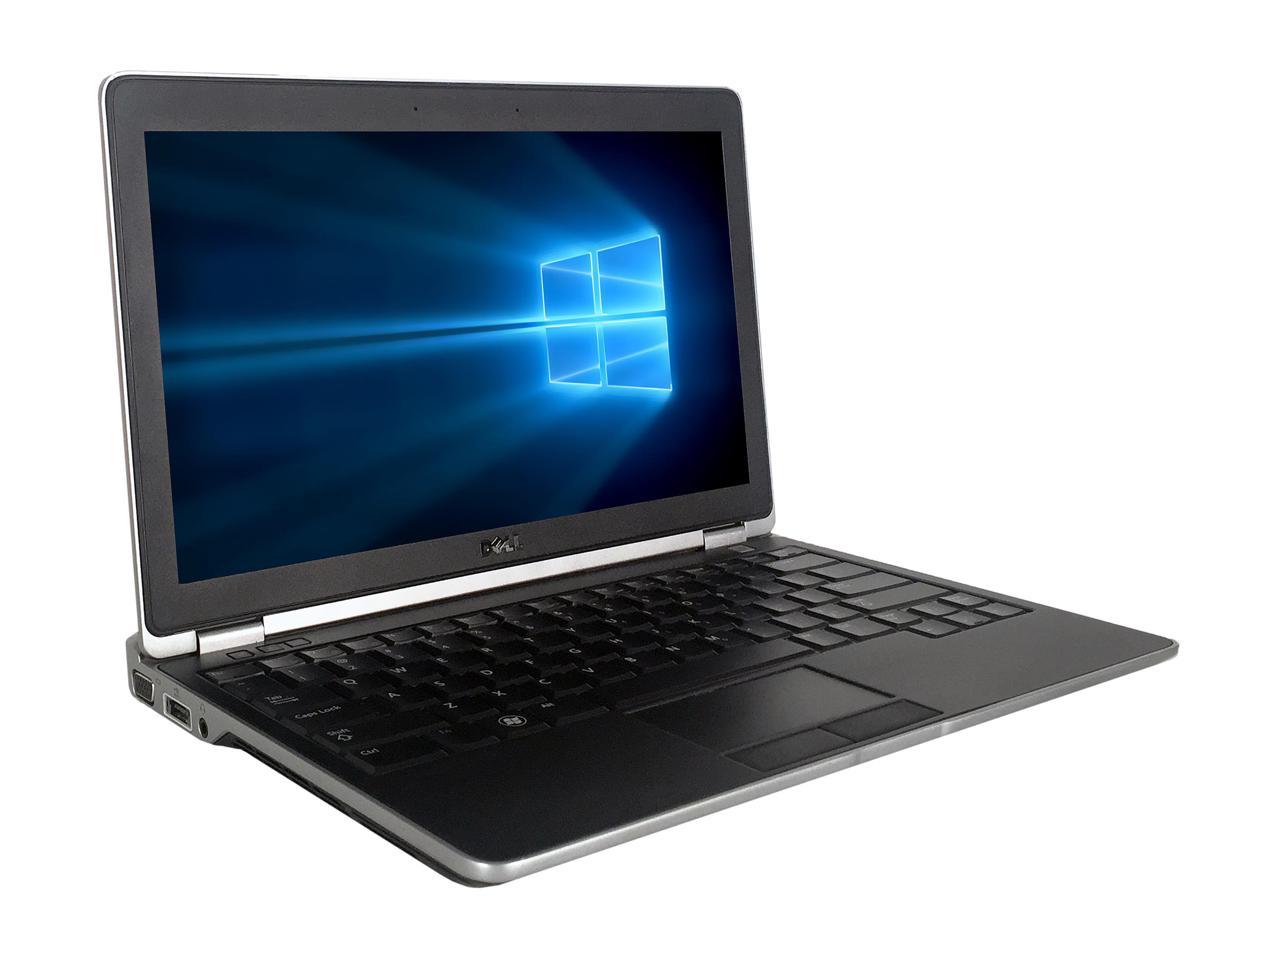 Refurbished: DELL Laptop Latitude E6220 Intel Core i7 2nd Gen 2620M (2